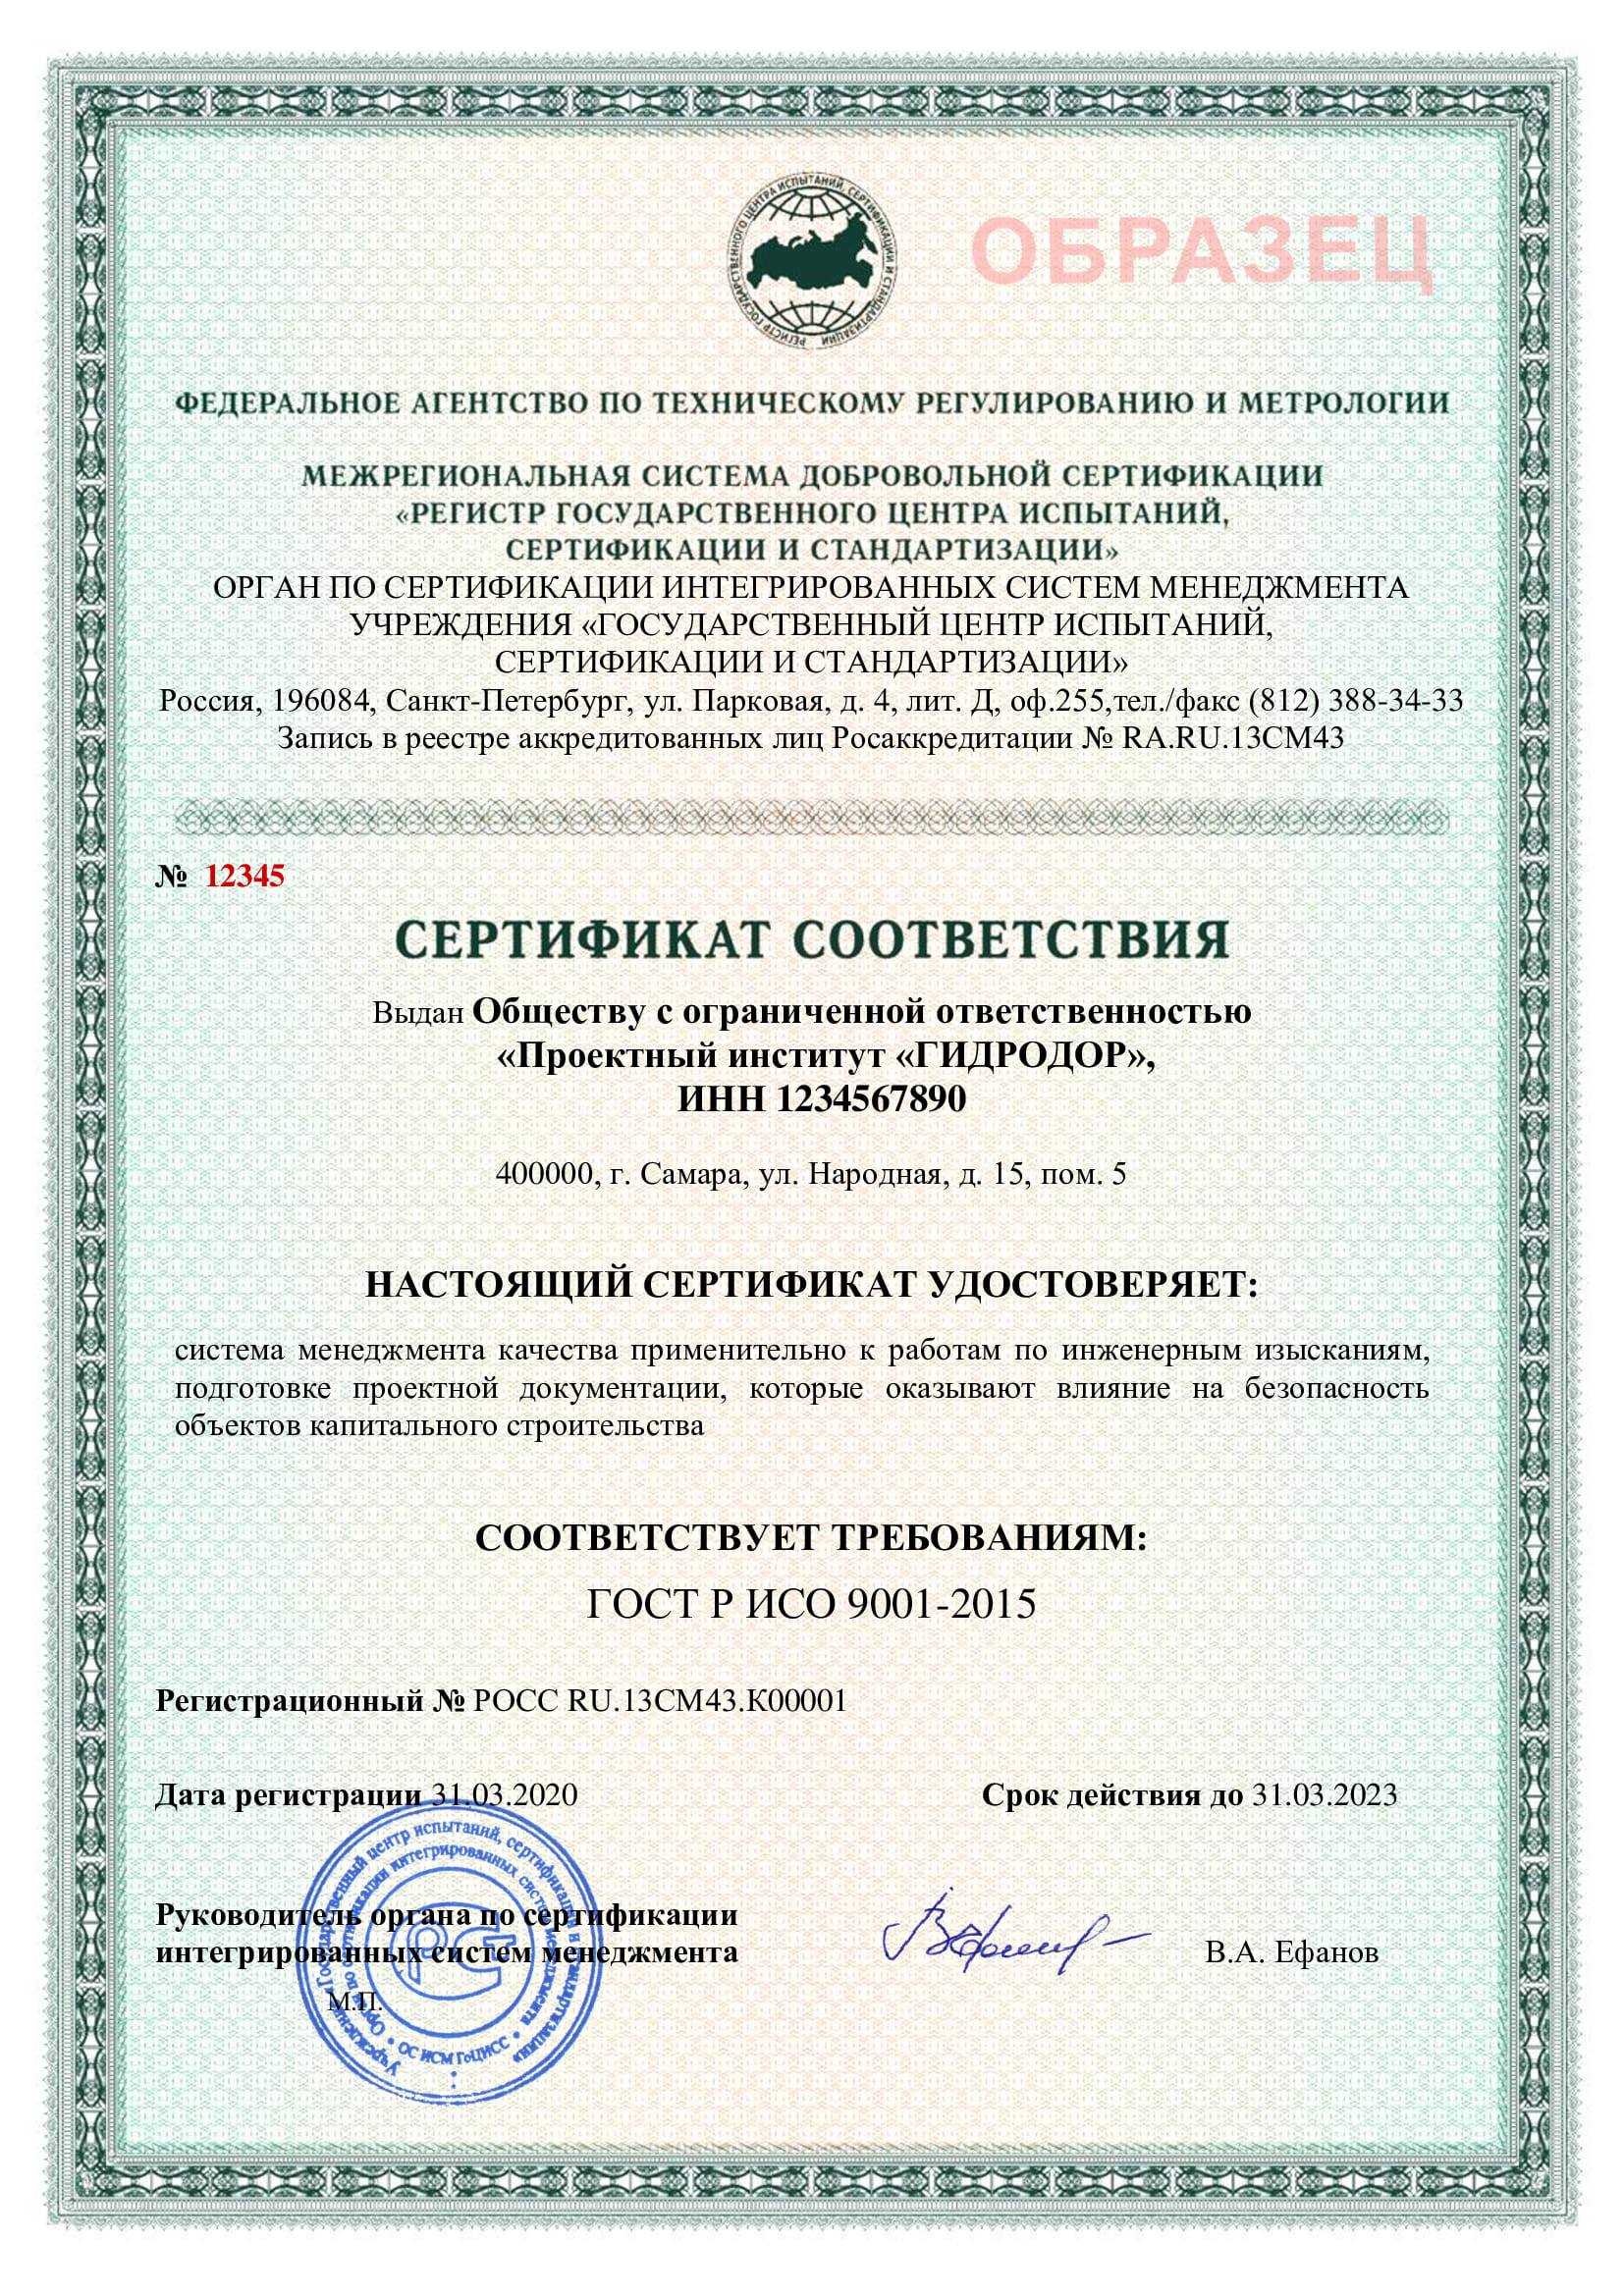 Сертификаты смк версия смк название органа сертификации номер сертификата и дата выдачи